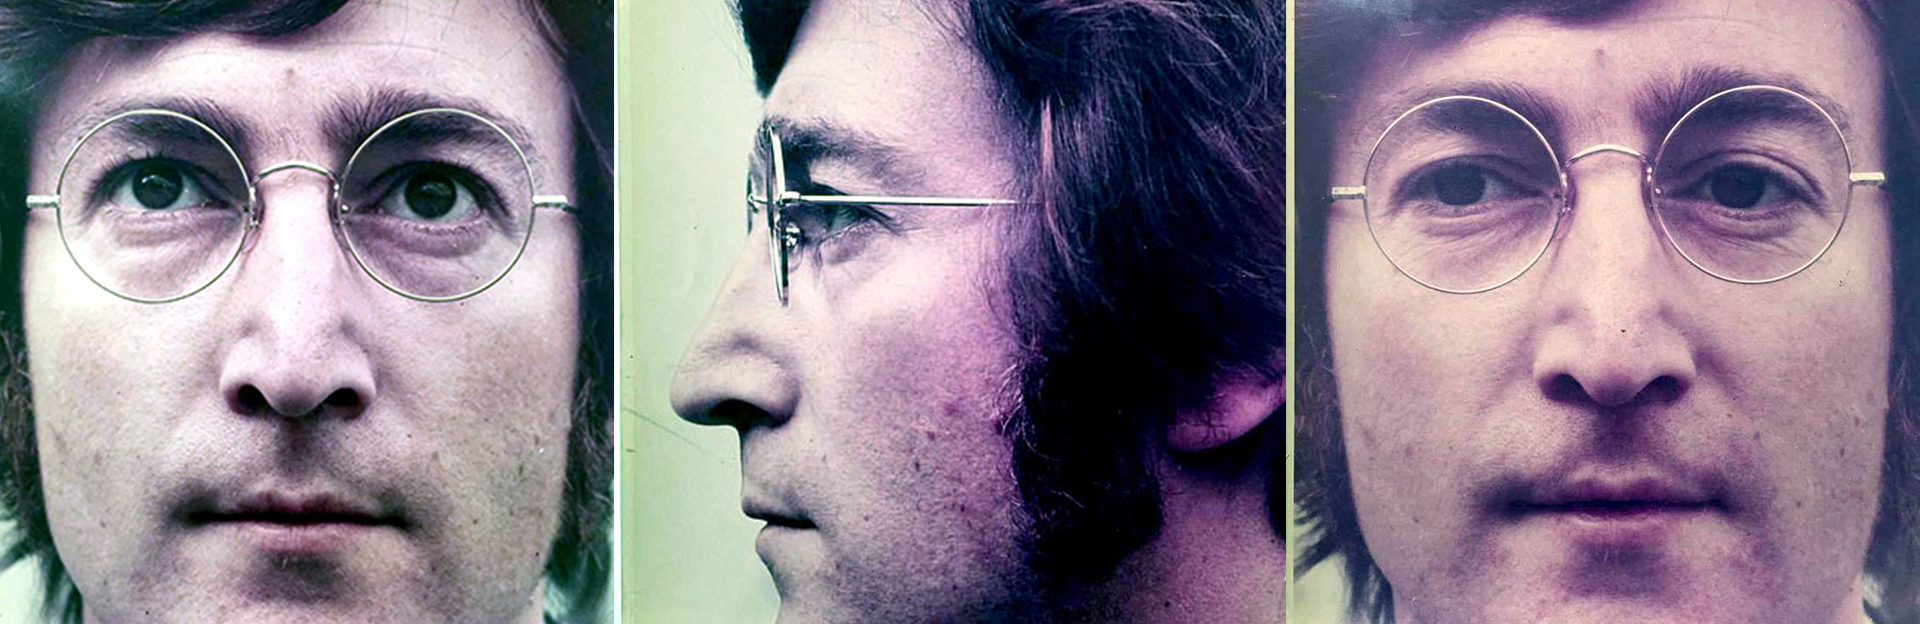 Tres imágenes de Lennon sacadas por Warhol